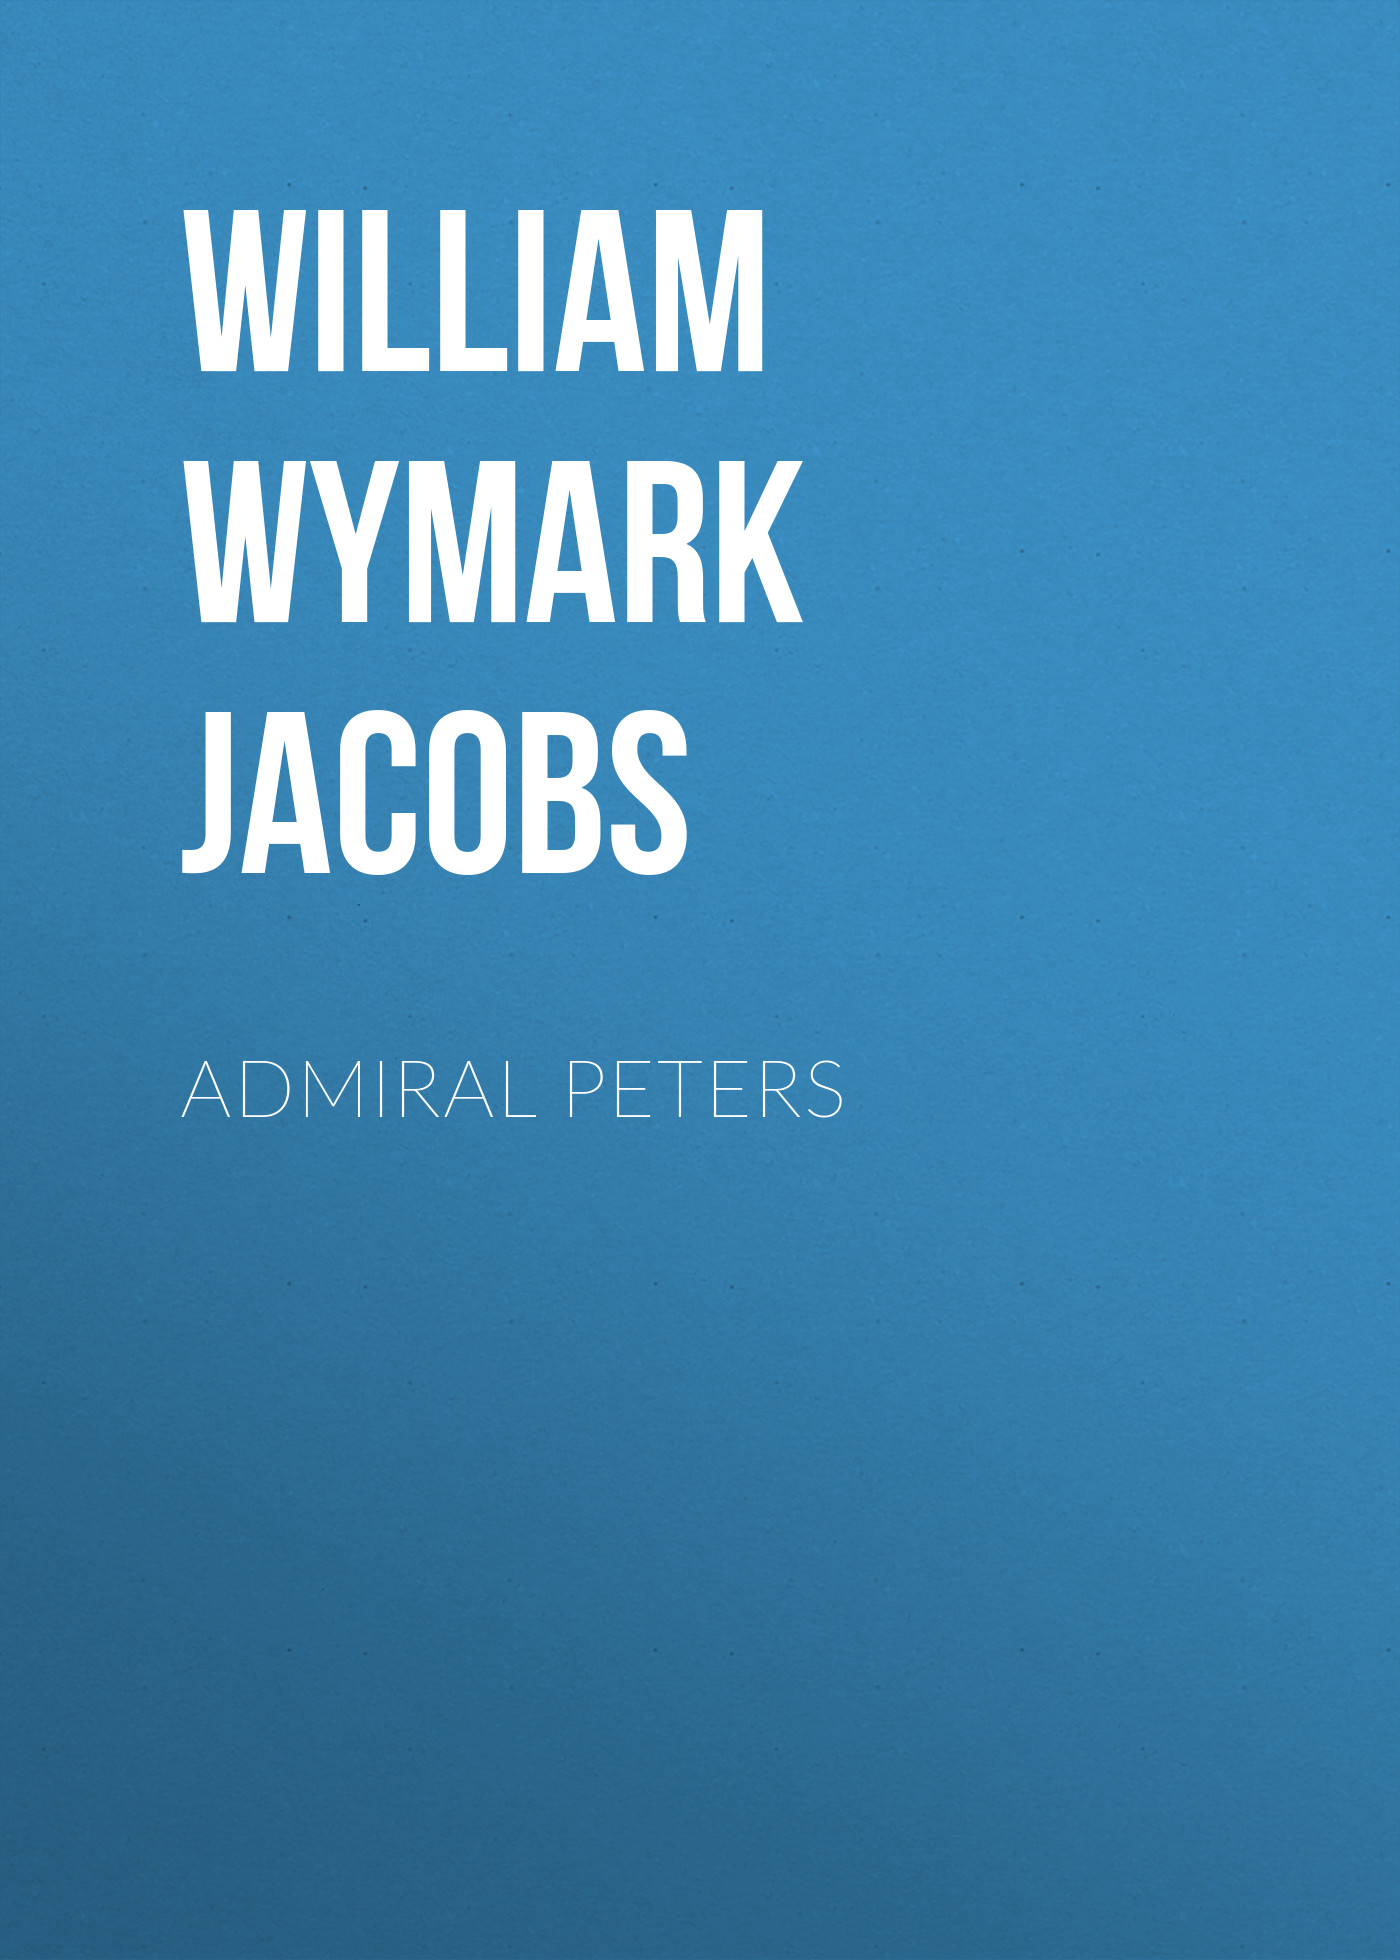 Книга Admiral Peters из серии , созданная William Wymark Jacobs, может относится к жанру Зарубежный юмор, Зарубежная старинная литература, Зарубежная классика. Стоимость электронной книги Admiral Peters с идентификатором 34842390 составляет 0 руб.